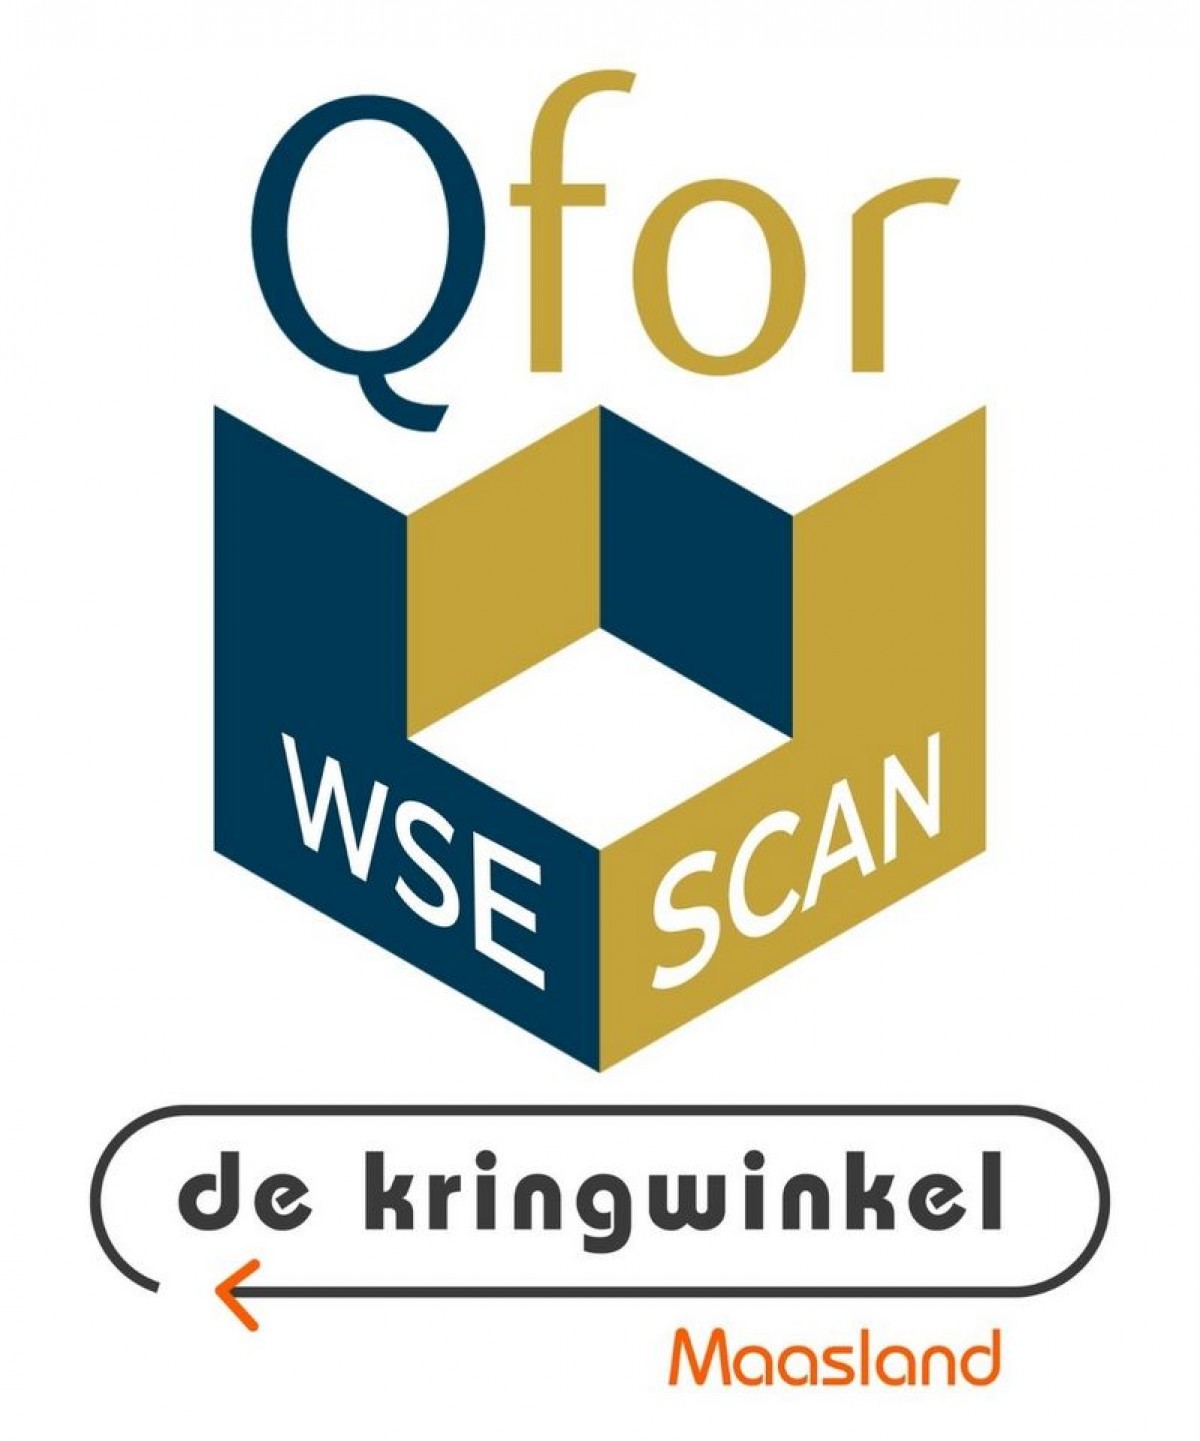 QFor WSE Scan De Kringwinkel Maasland